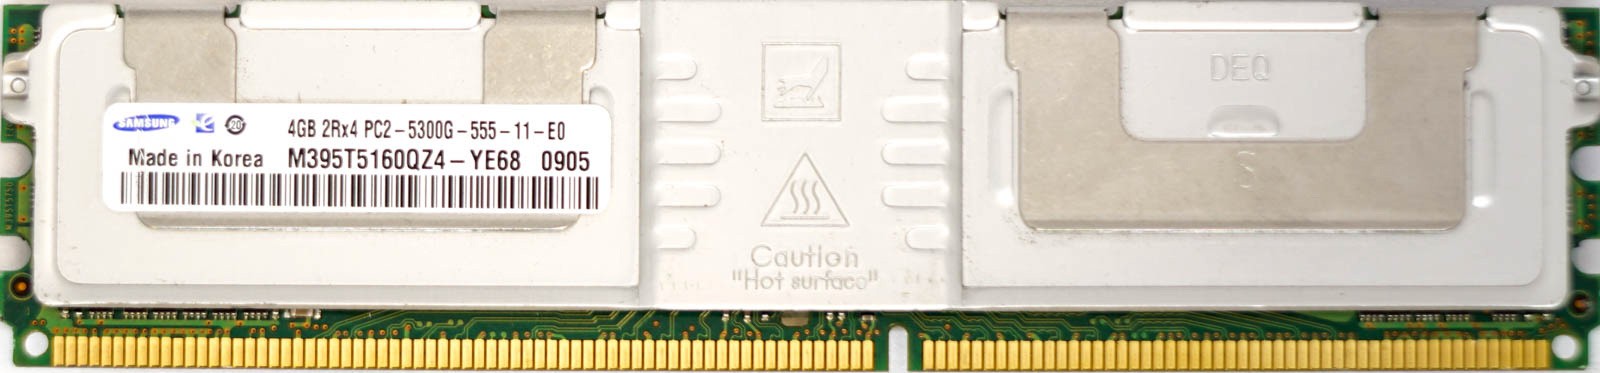 Samsung - 4GB PC2-5300G (DDR2-667Mhz, 2RX4)